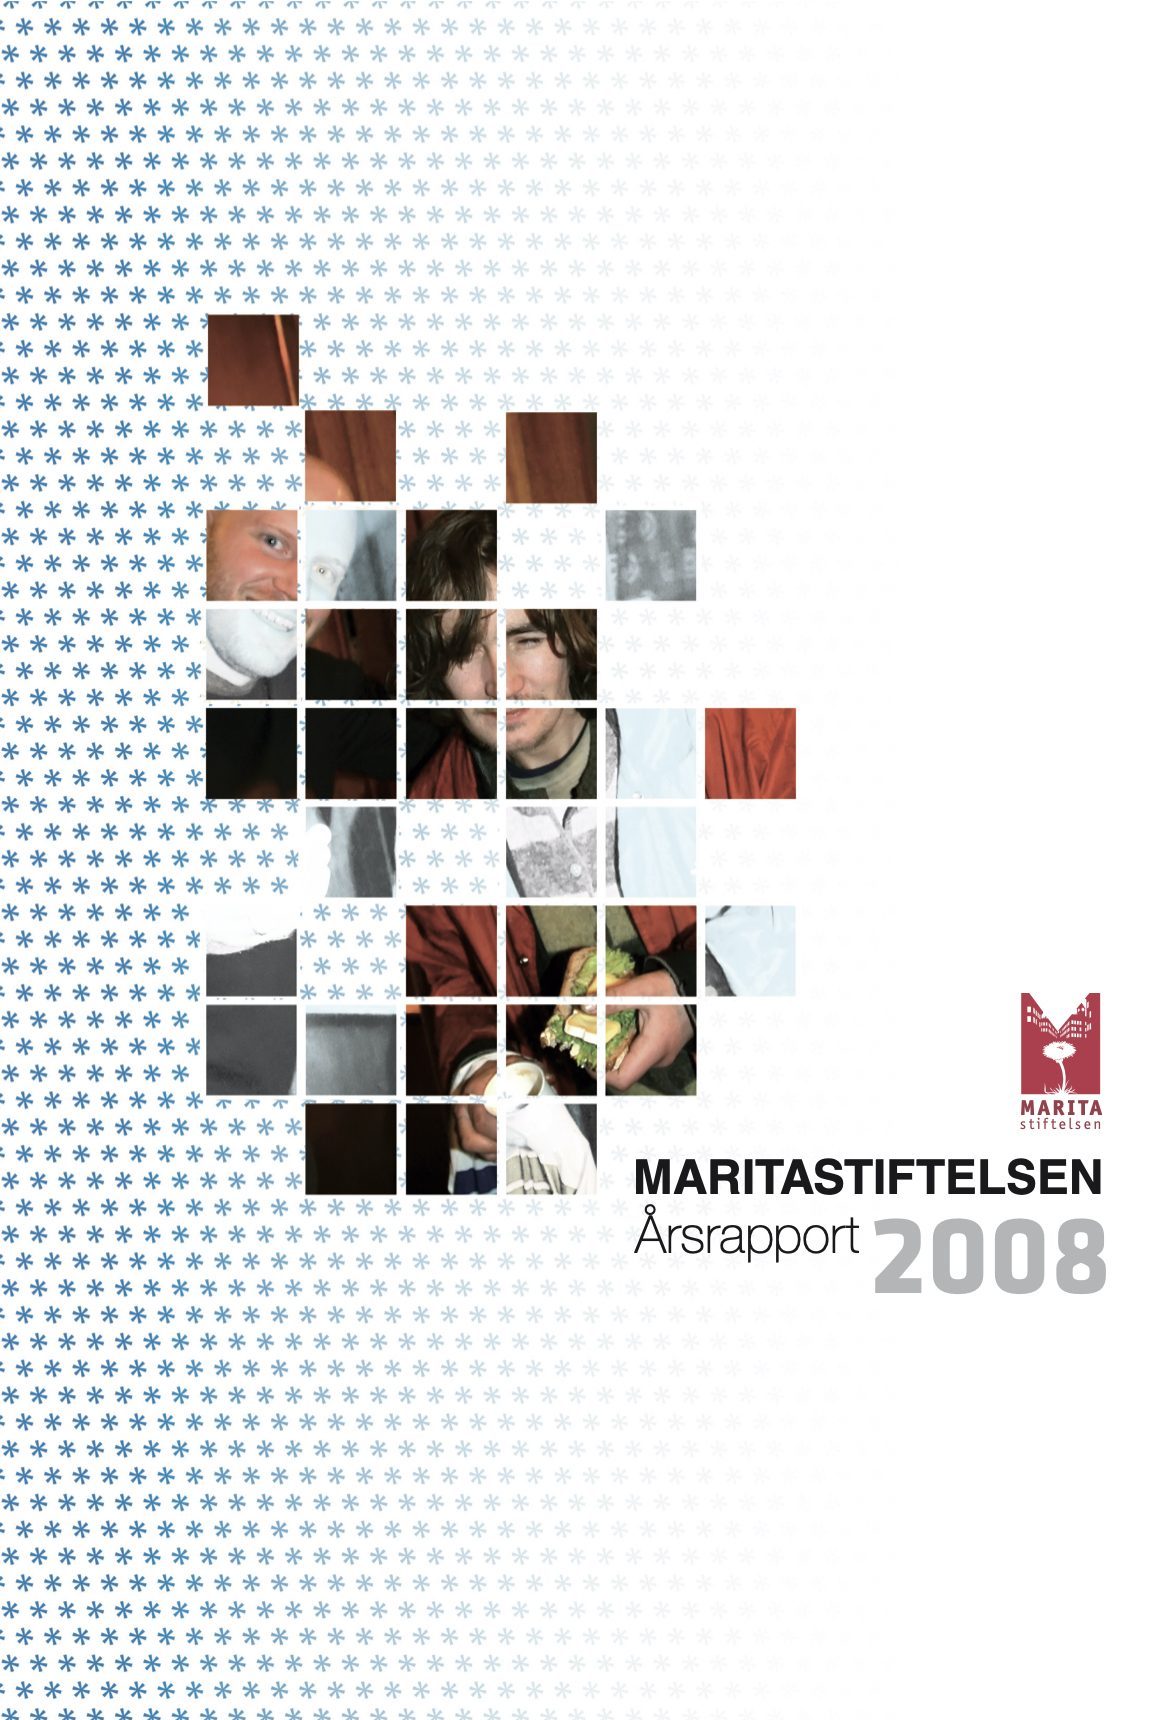 2008 Marita årsrapport